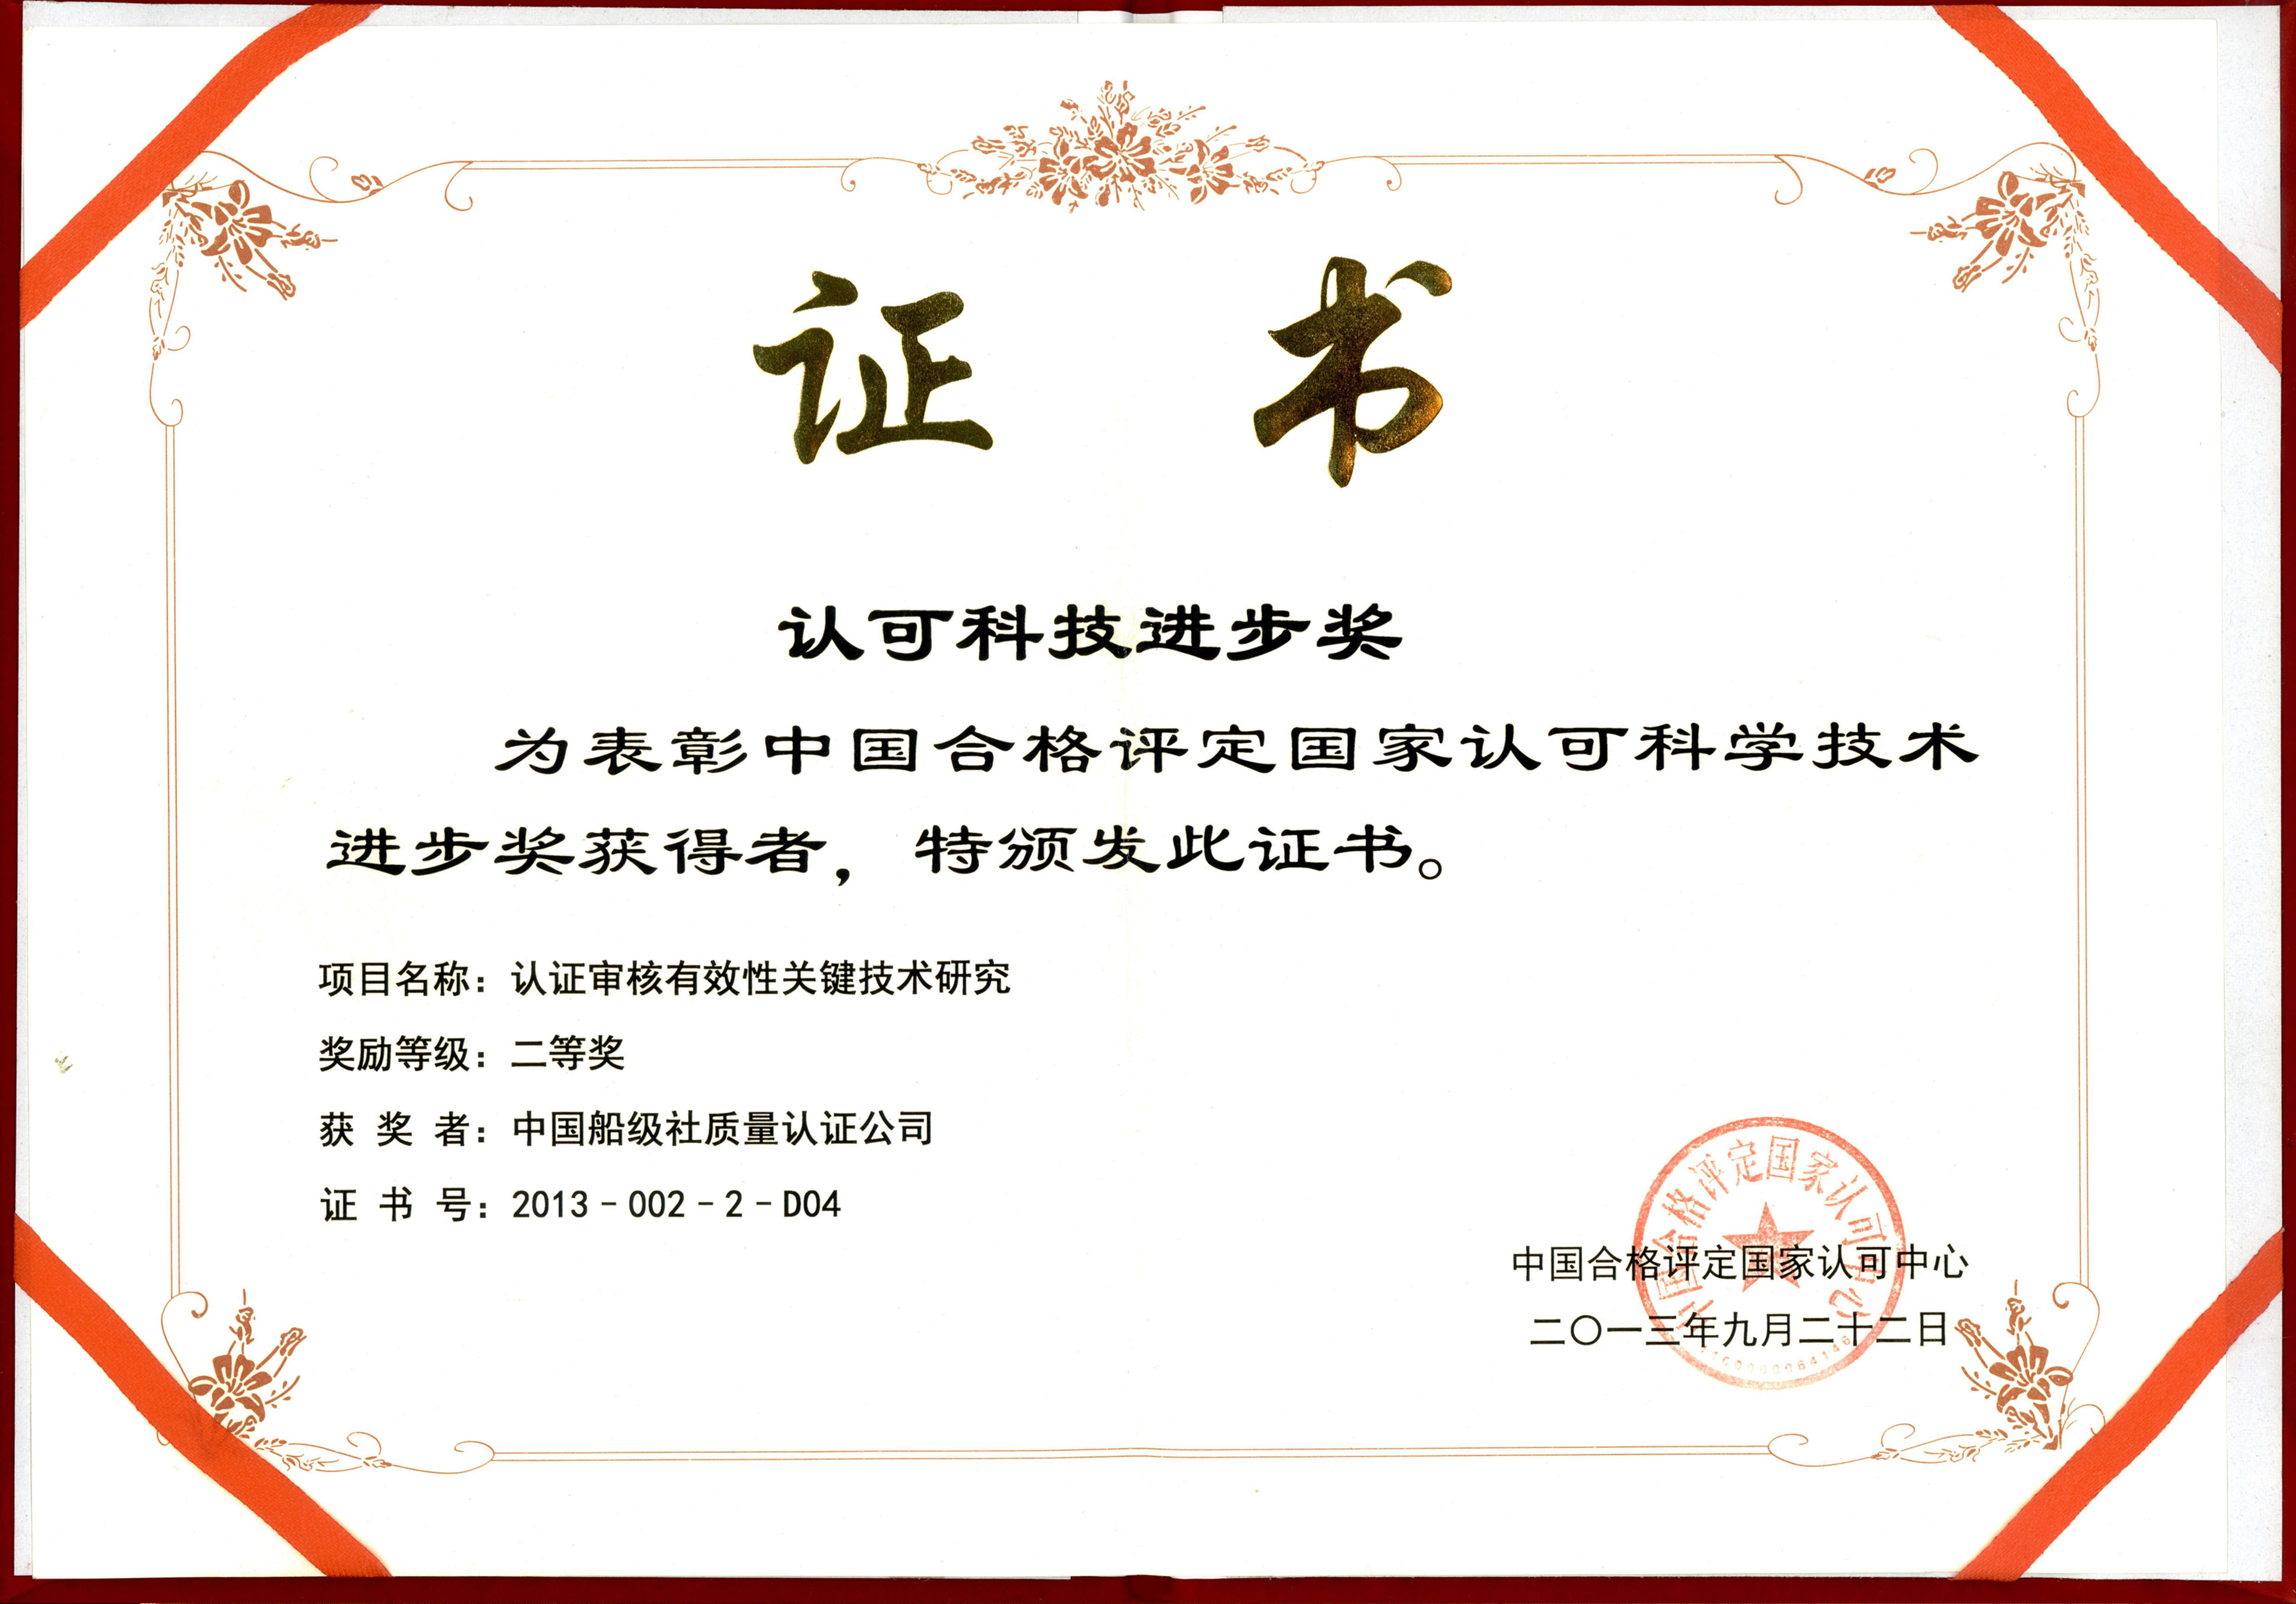 2013年9月22日，公司牵头承担的《认证审核有效性关键技术研究》，获中国合格评定国家认可科学技术进步二等奖。.jpg